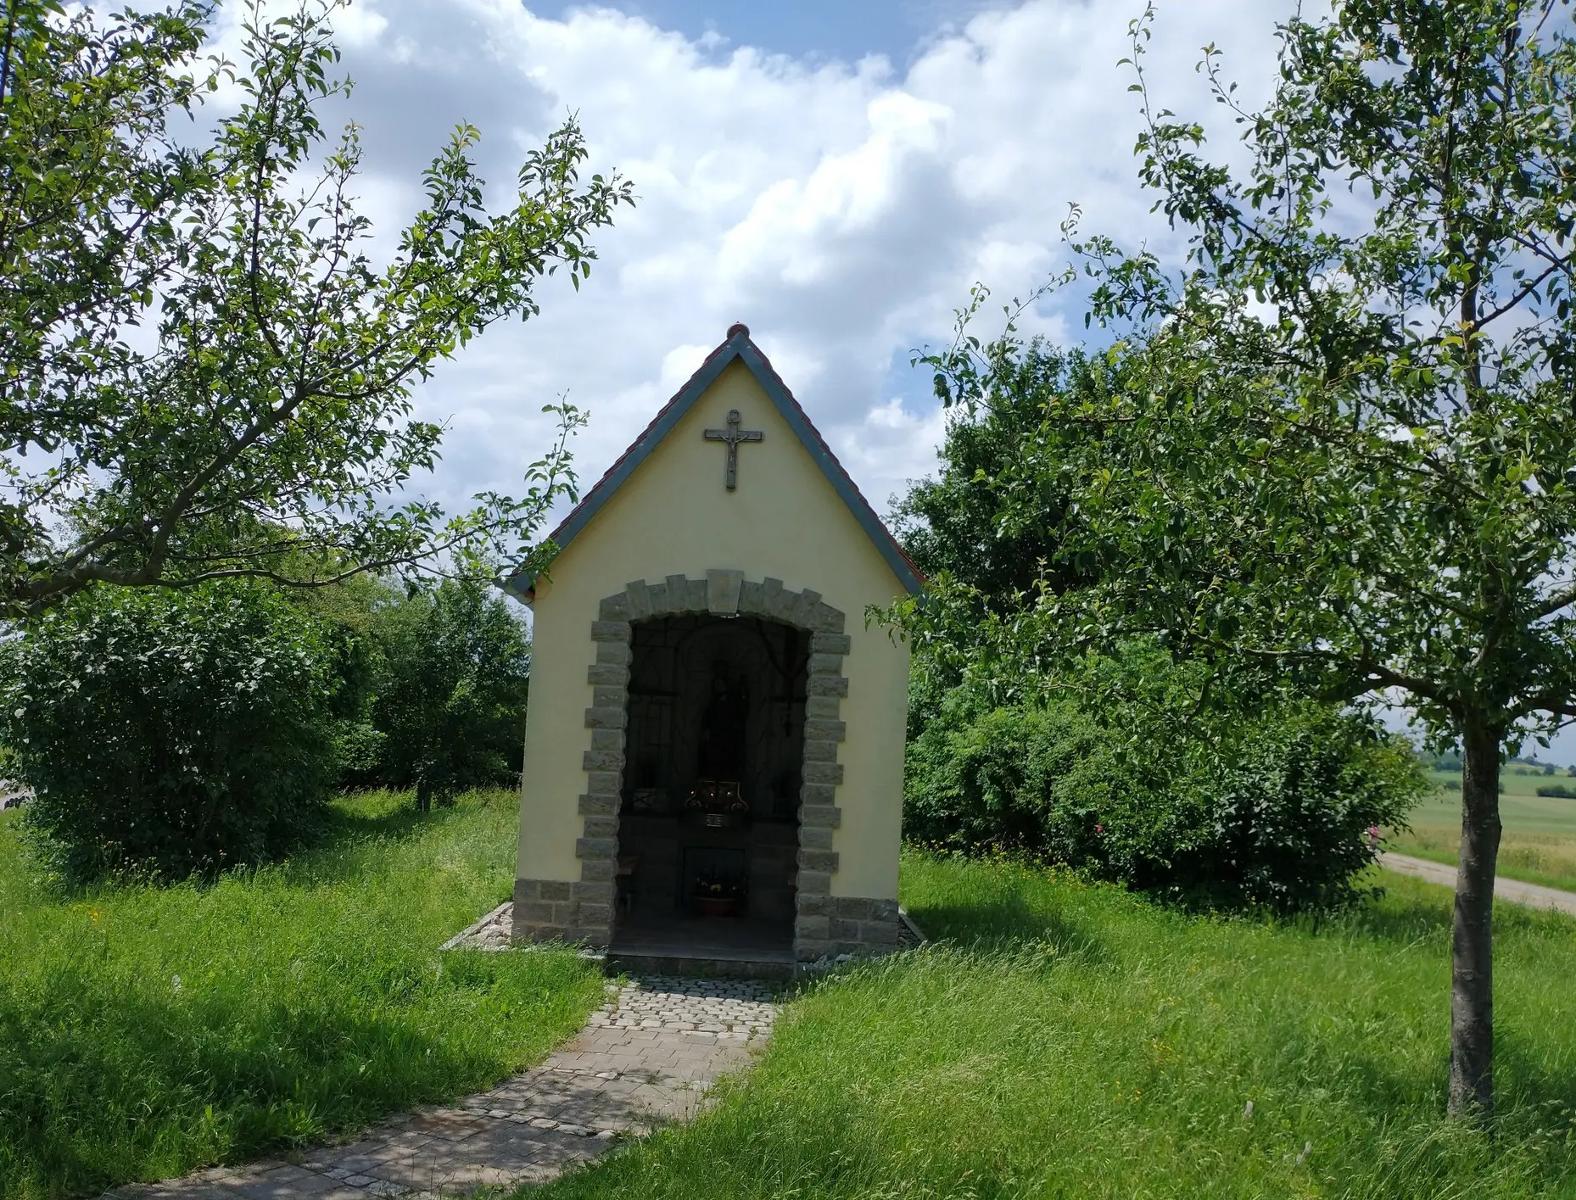 Die kleine Kapelle wurde im Jahr 2008 von den Wallfahrern errichtet und beherbergt eine Statue des St. Salvator.
                 title=